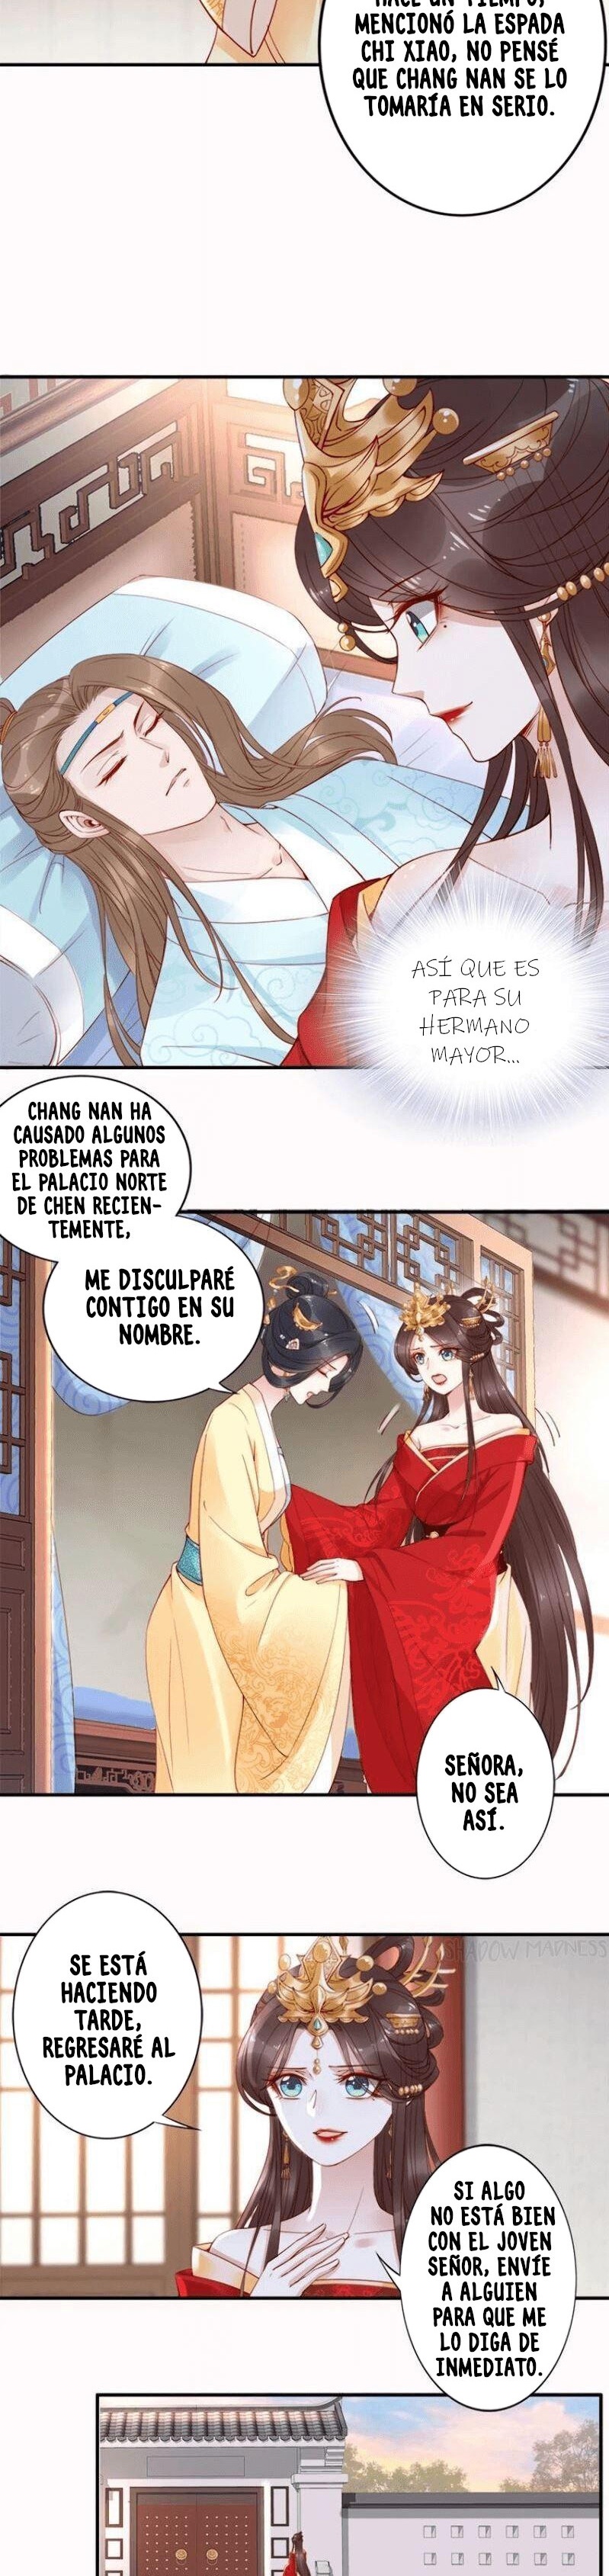 Manga Fenix volando desde el Palacio del Este Chapter 13 image number 12